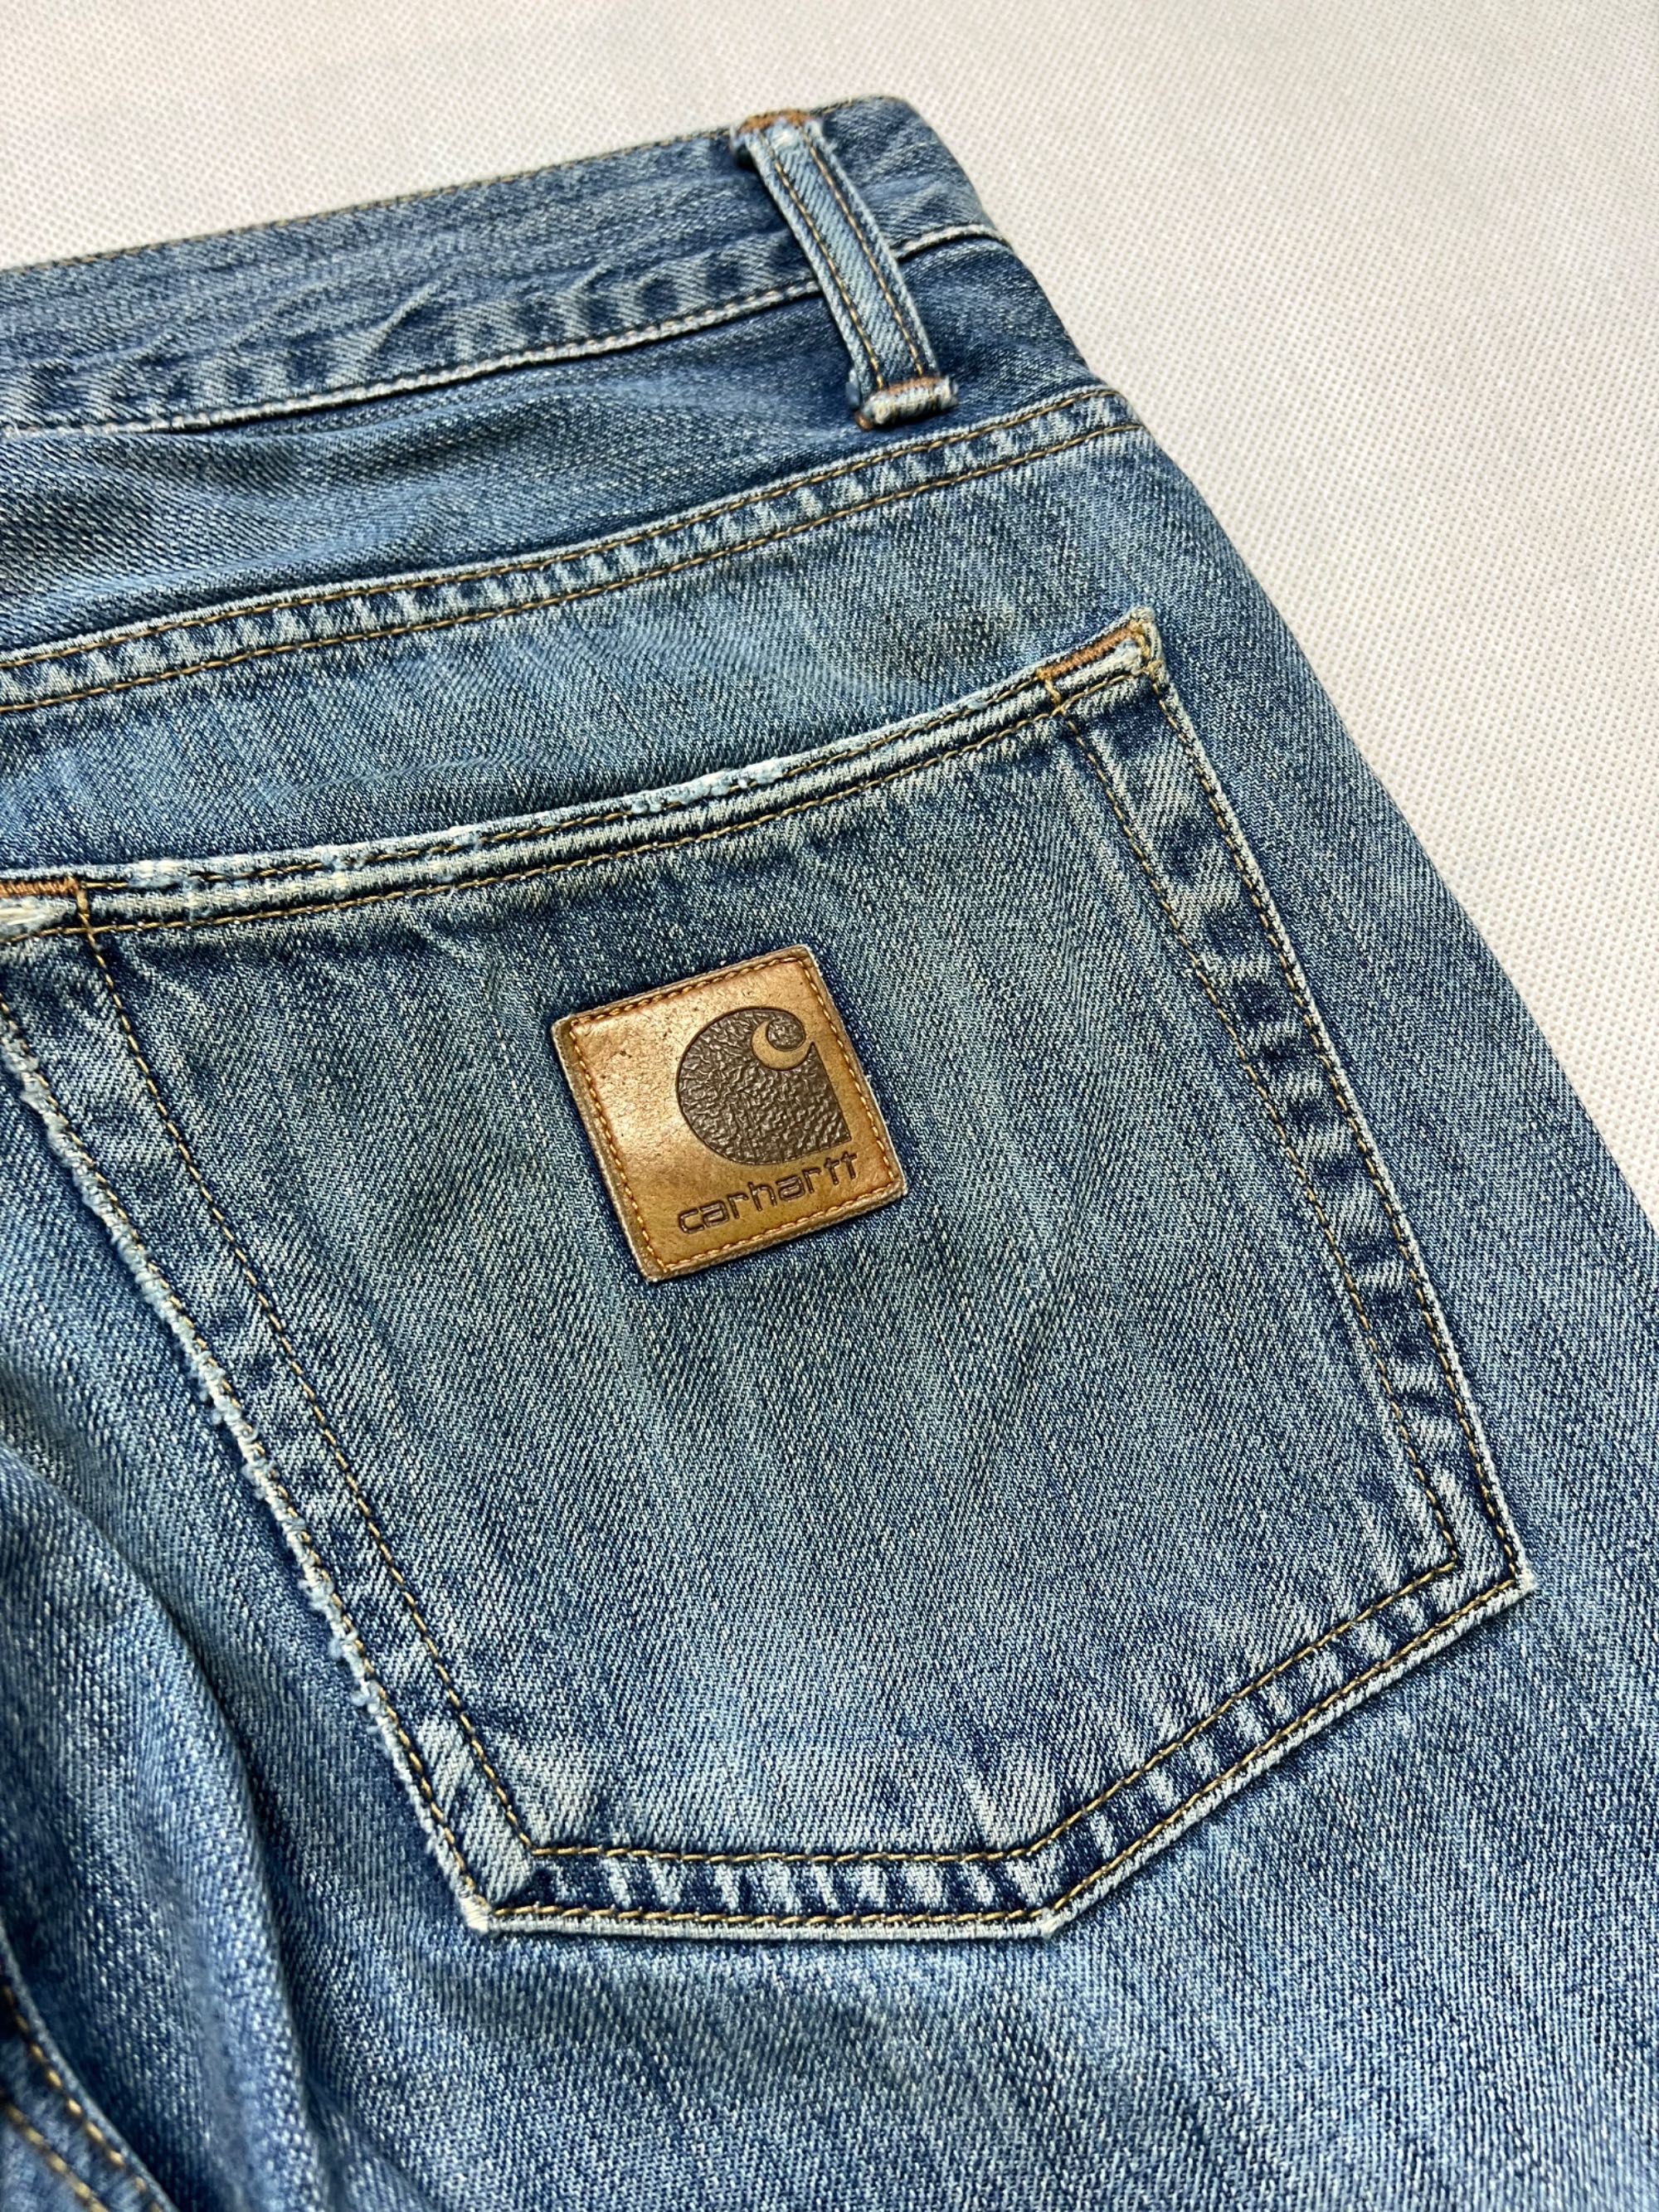 Spodnie Carhartt vintage